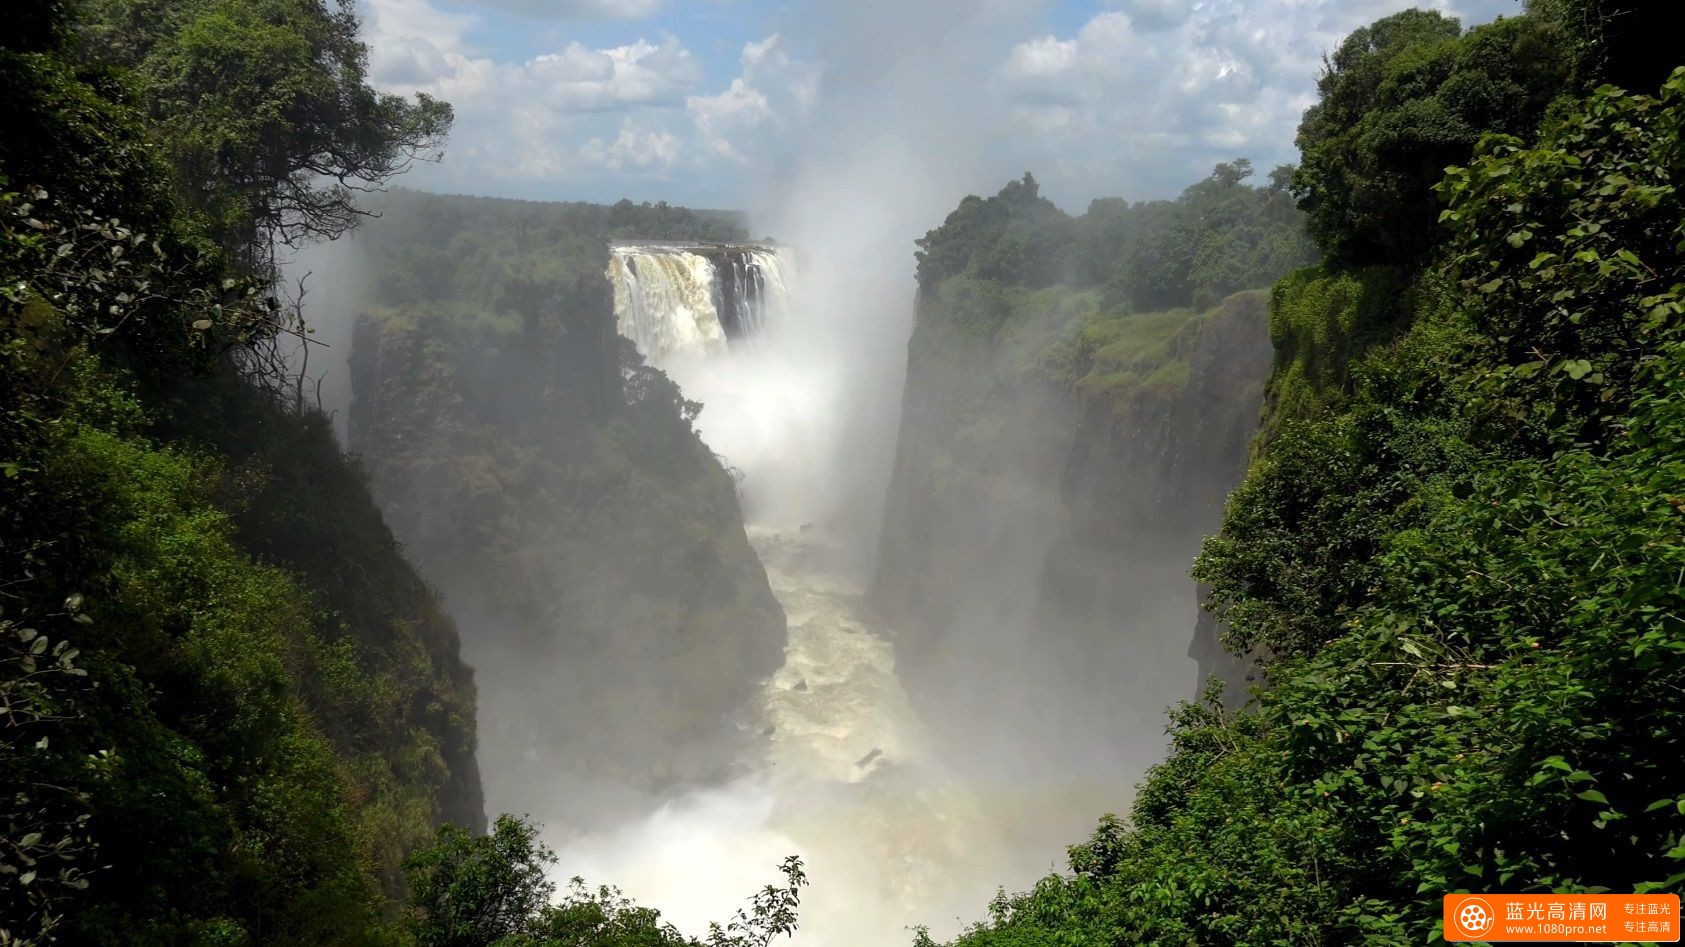 赞比亚和津巴布韦 - 维多利亚瀑布 2017Victoria Falls, Zambia & Zimbabwe in 4K Ultra HD [2160P/MKV/928MB]-8.jpg